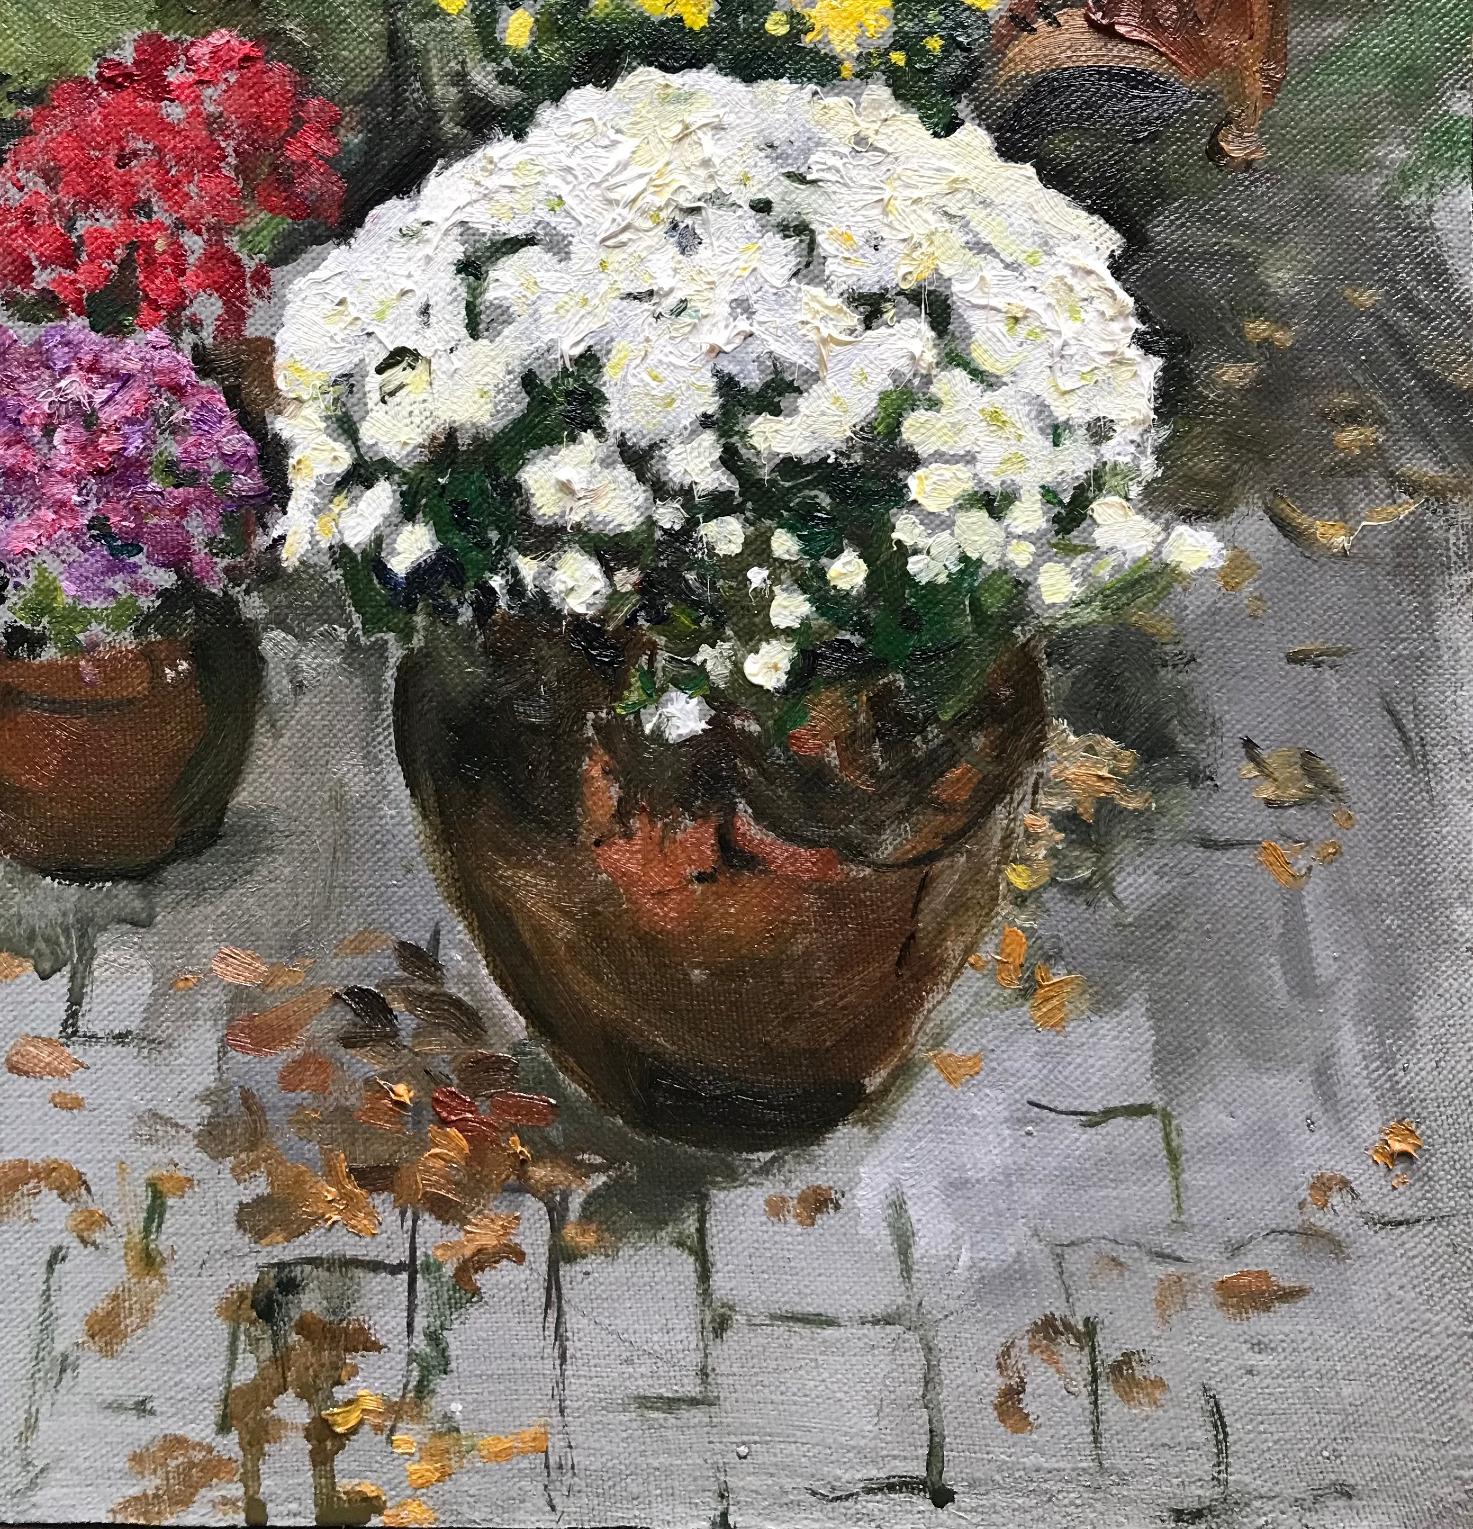  Mums, 12 x 9, Öl, Farben, Schönheit der Natur, Impressionismus, Blumenmuster  (Grau), Still-Life Painting, von  Eric Santoli